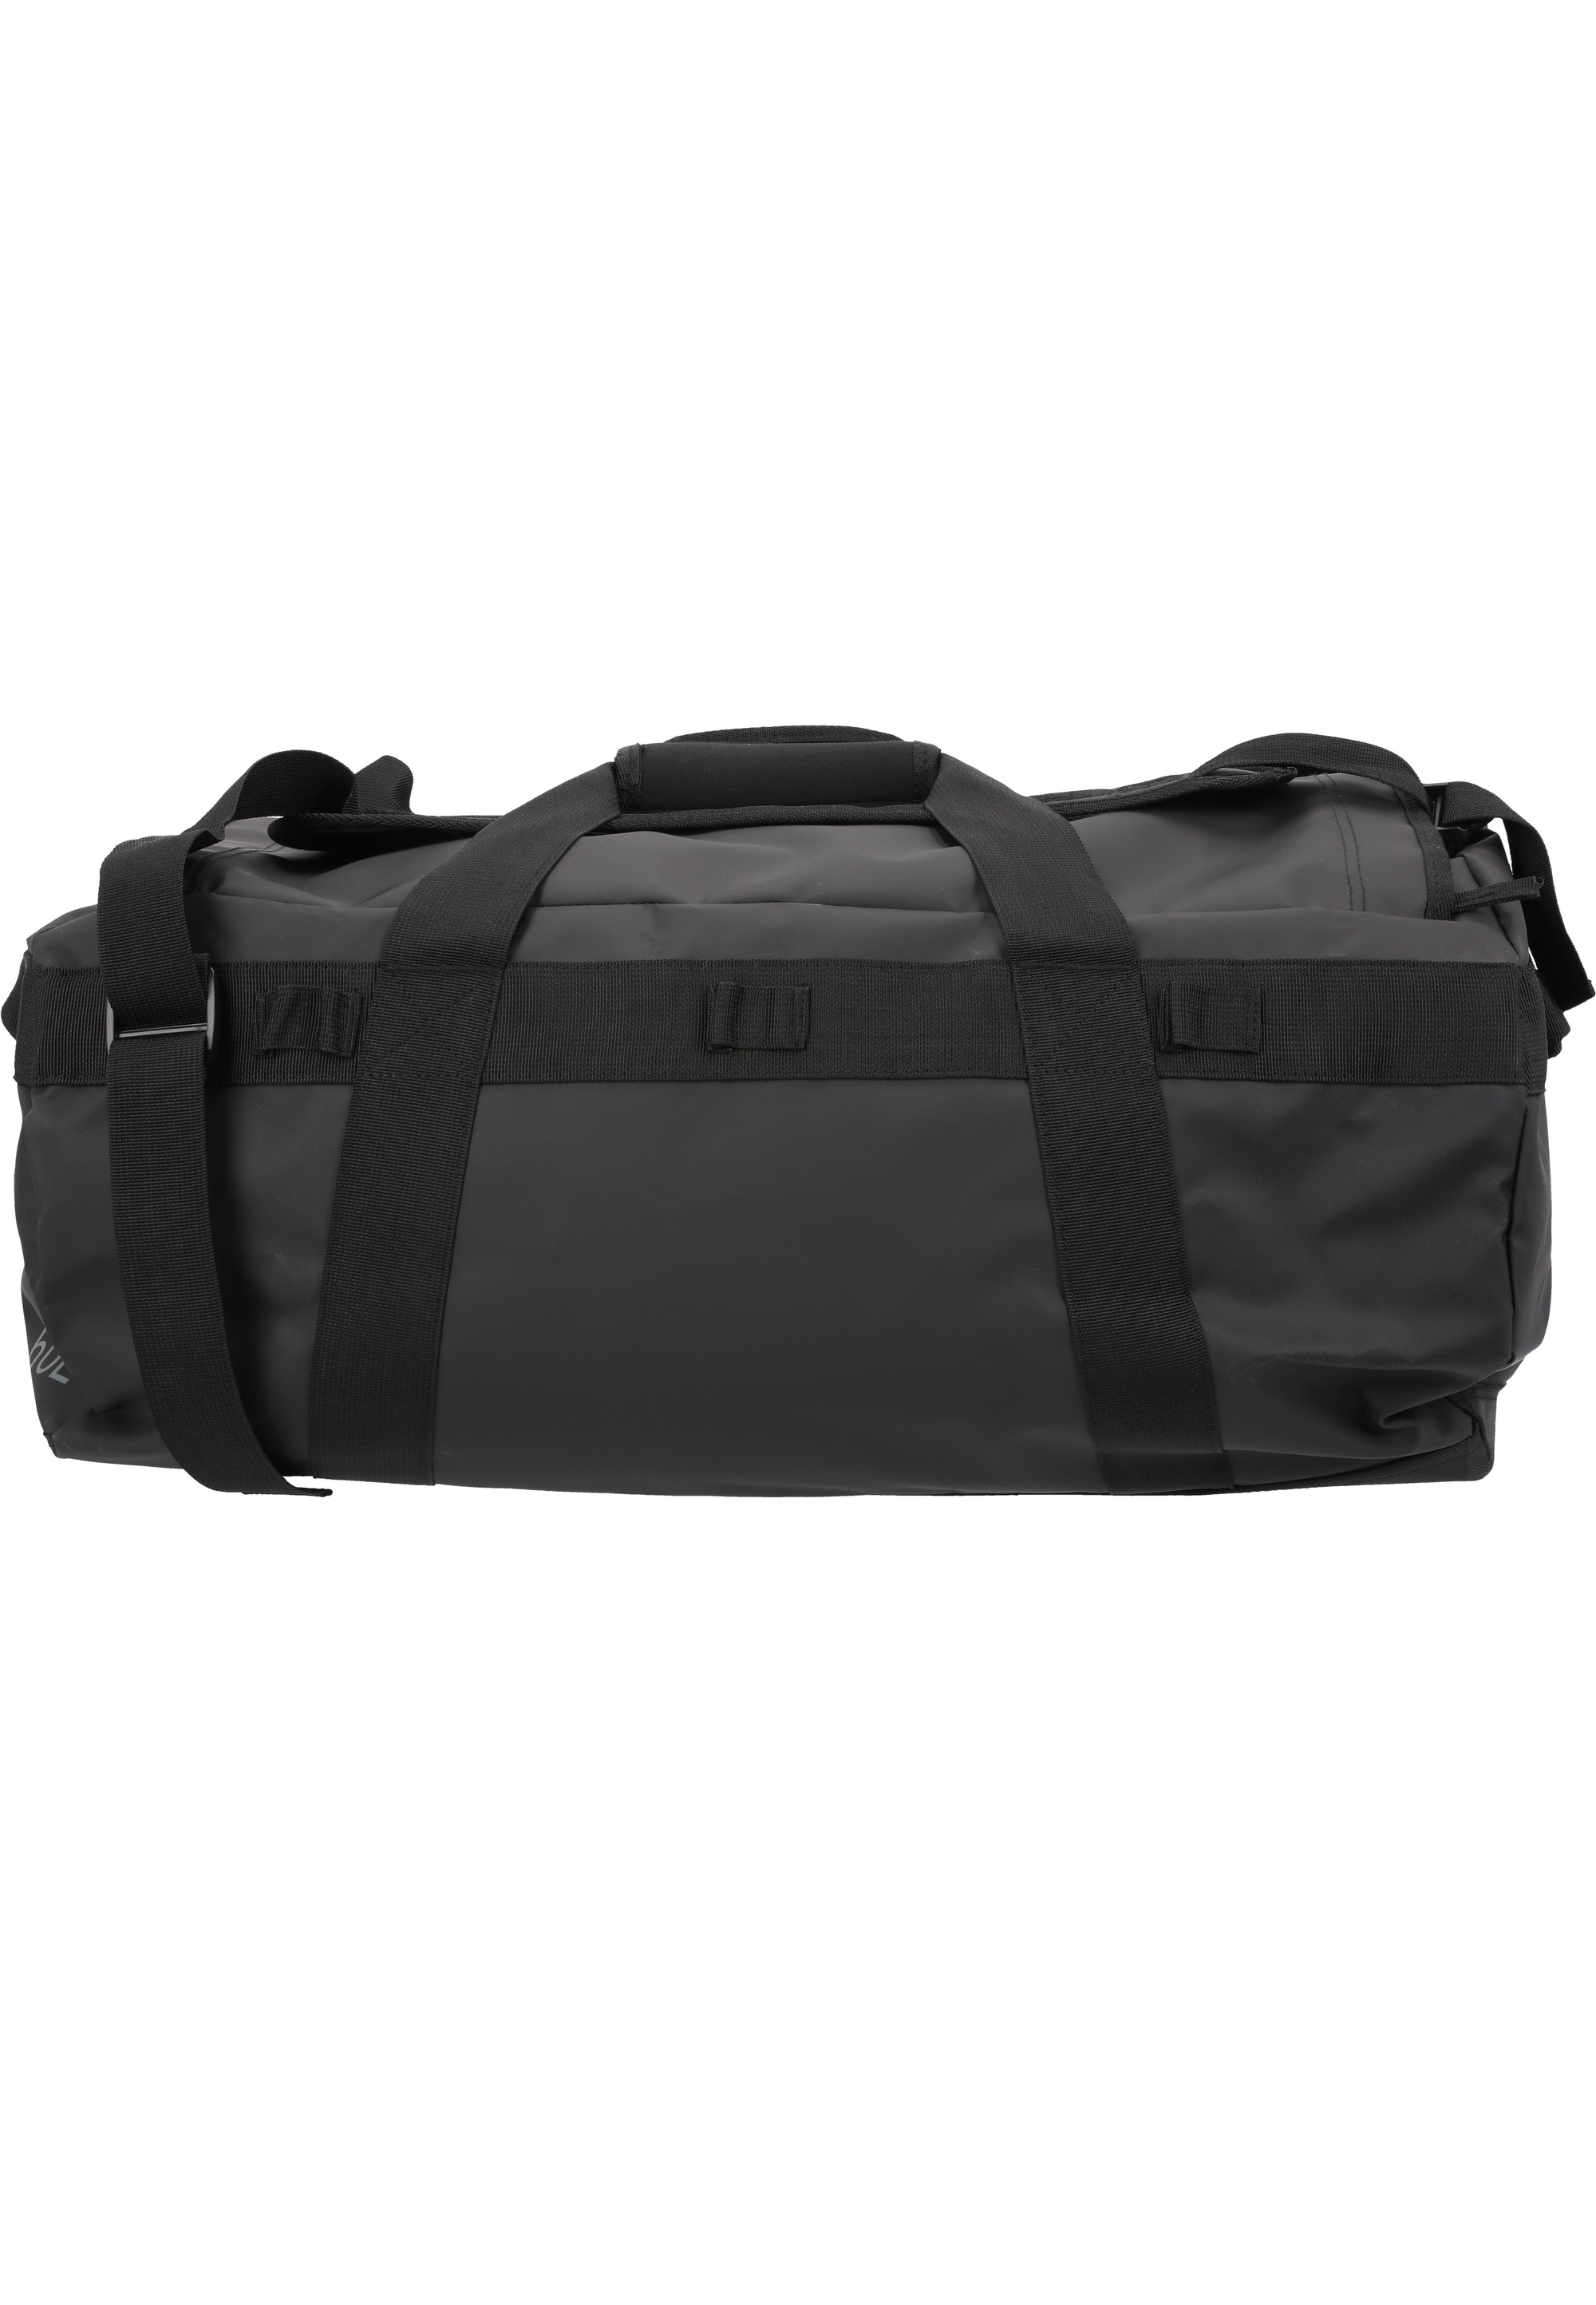 WHISTLER Sporttasche »Rhorsh«, mit einem Fassungsvermögen von 40 Litern